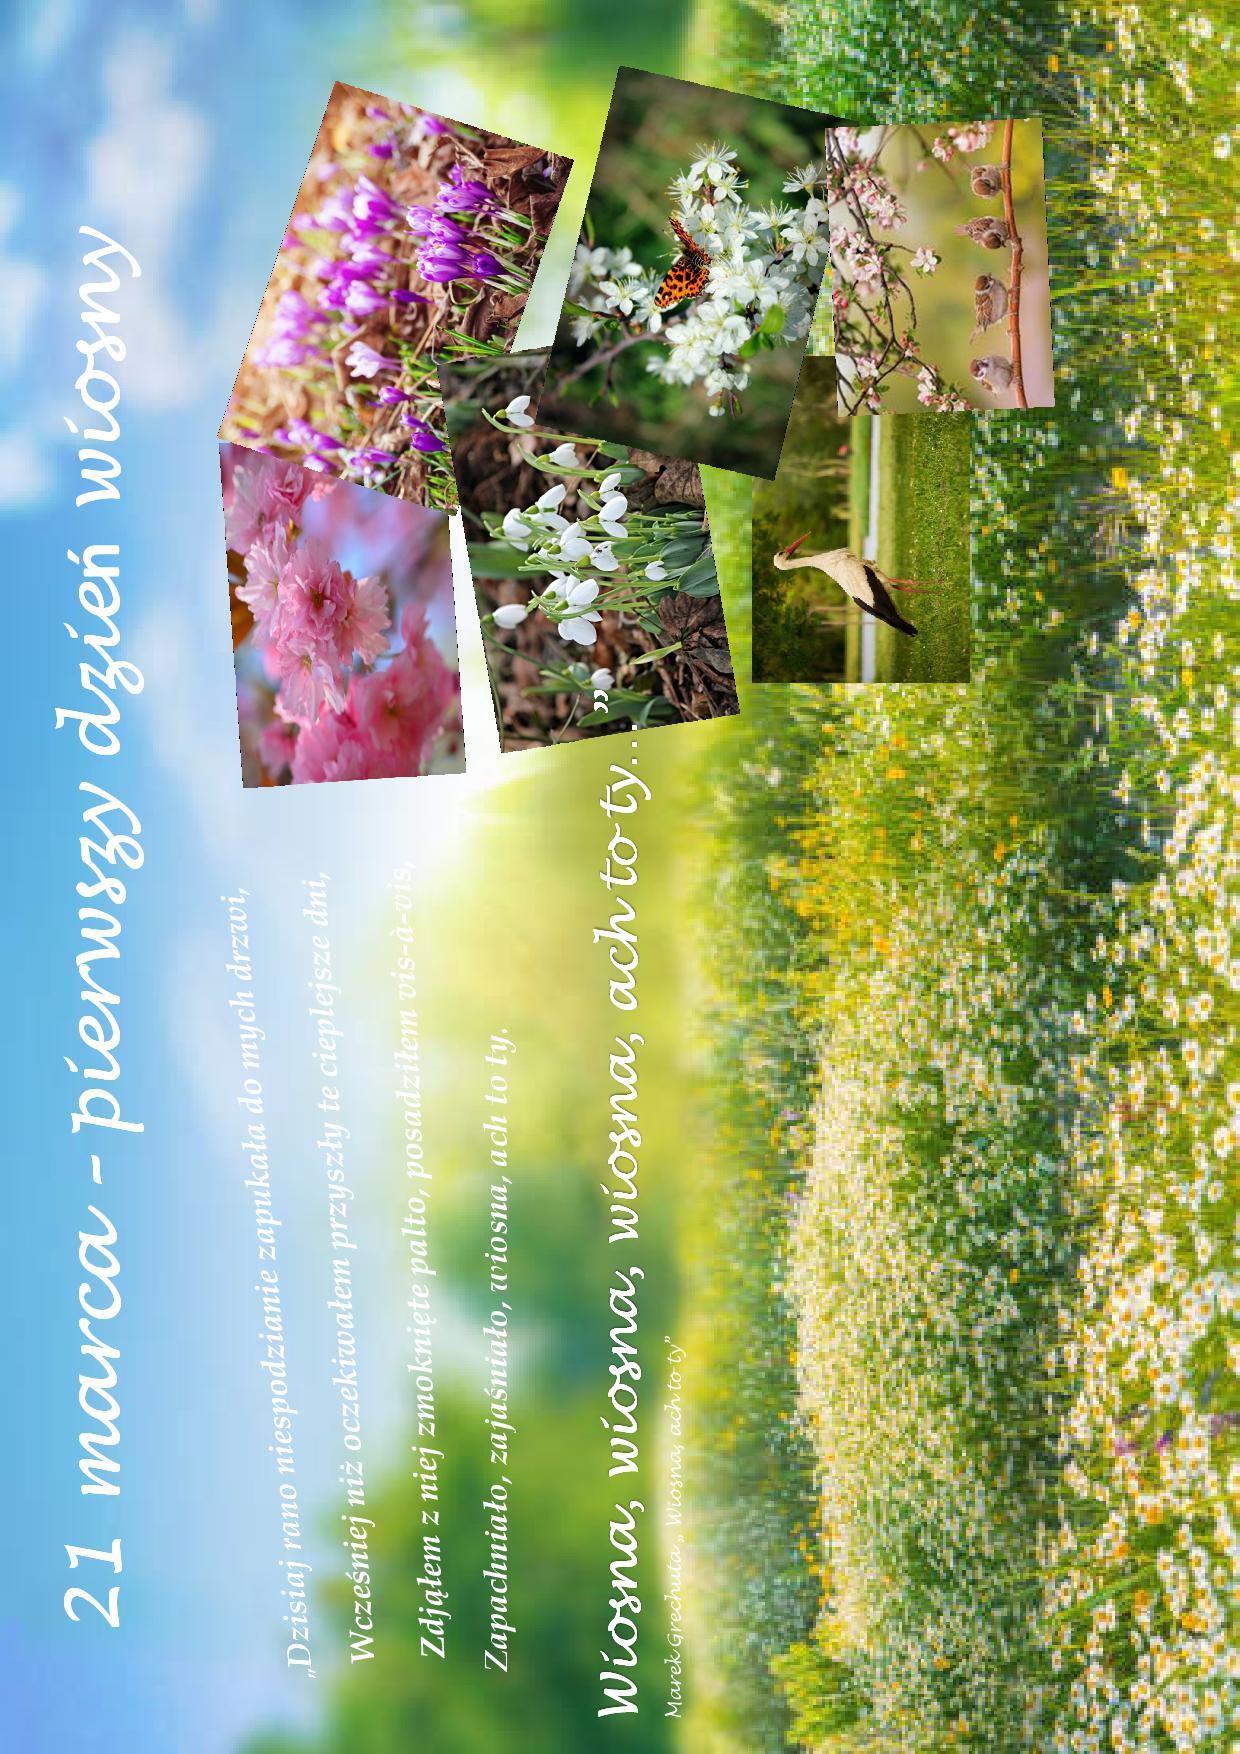 obraz łąki z kwiatami, po prawej stronie 6 zdjęć z pierwszymi oznakami wiosny, po lewej stronie fragment piosenki Marka Grechuty  